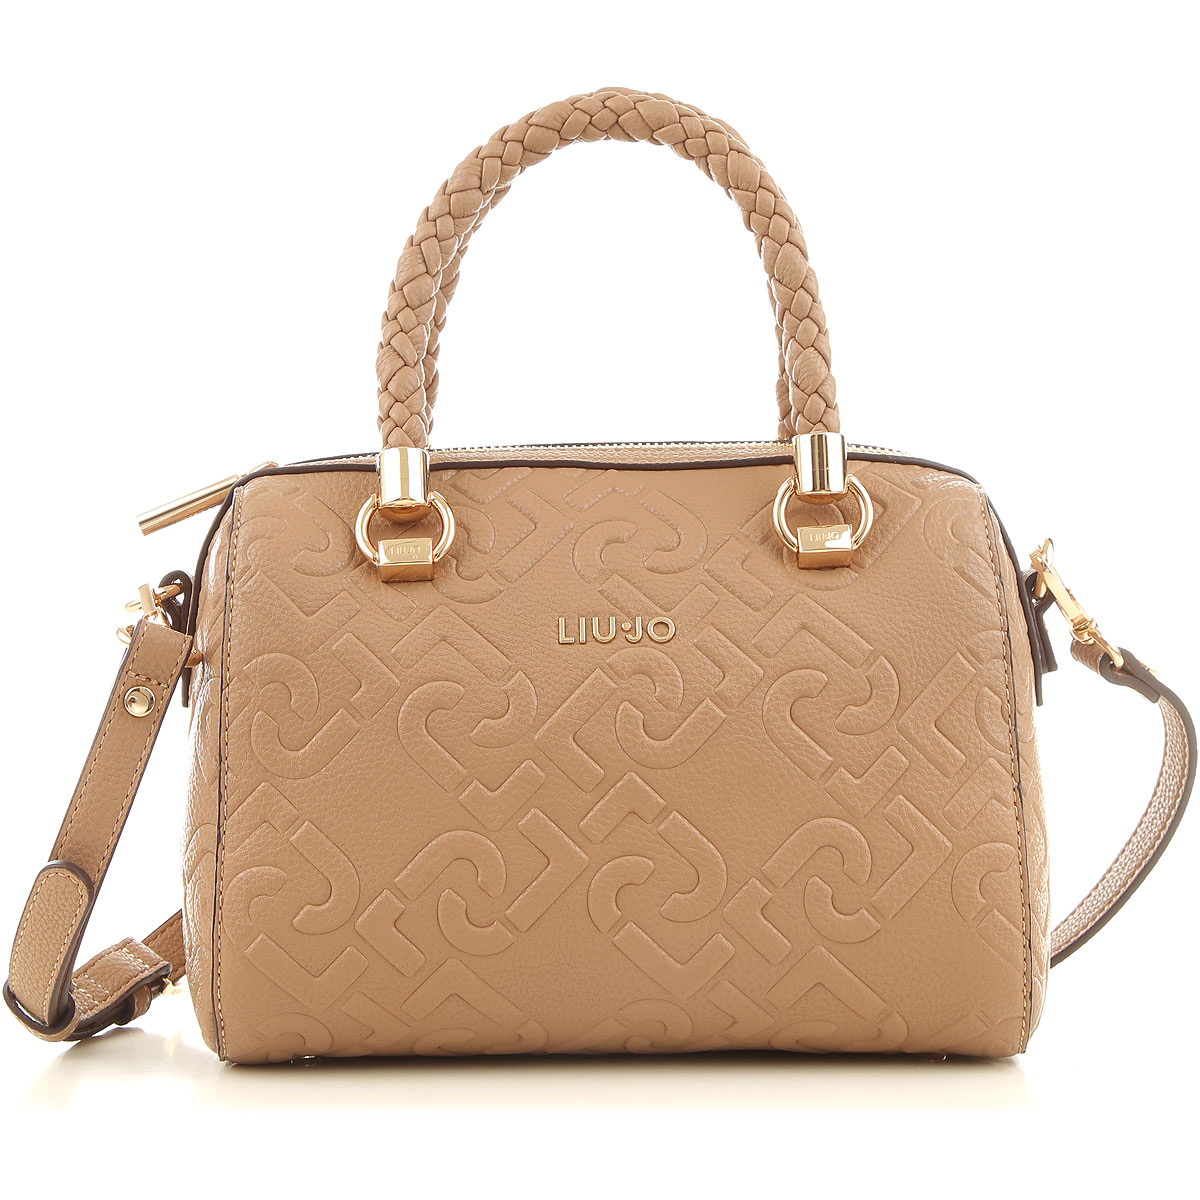 Handbags Liu Jo, Style code: nf0021-e0538-71328